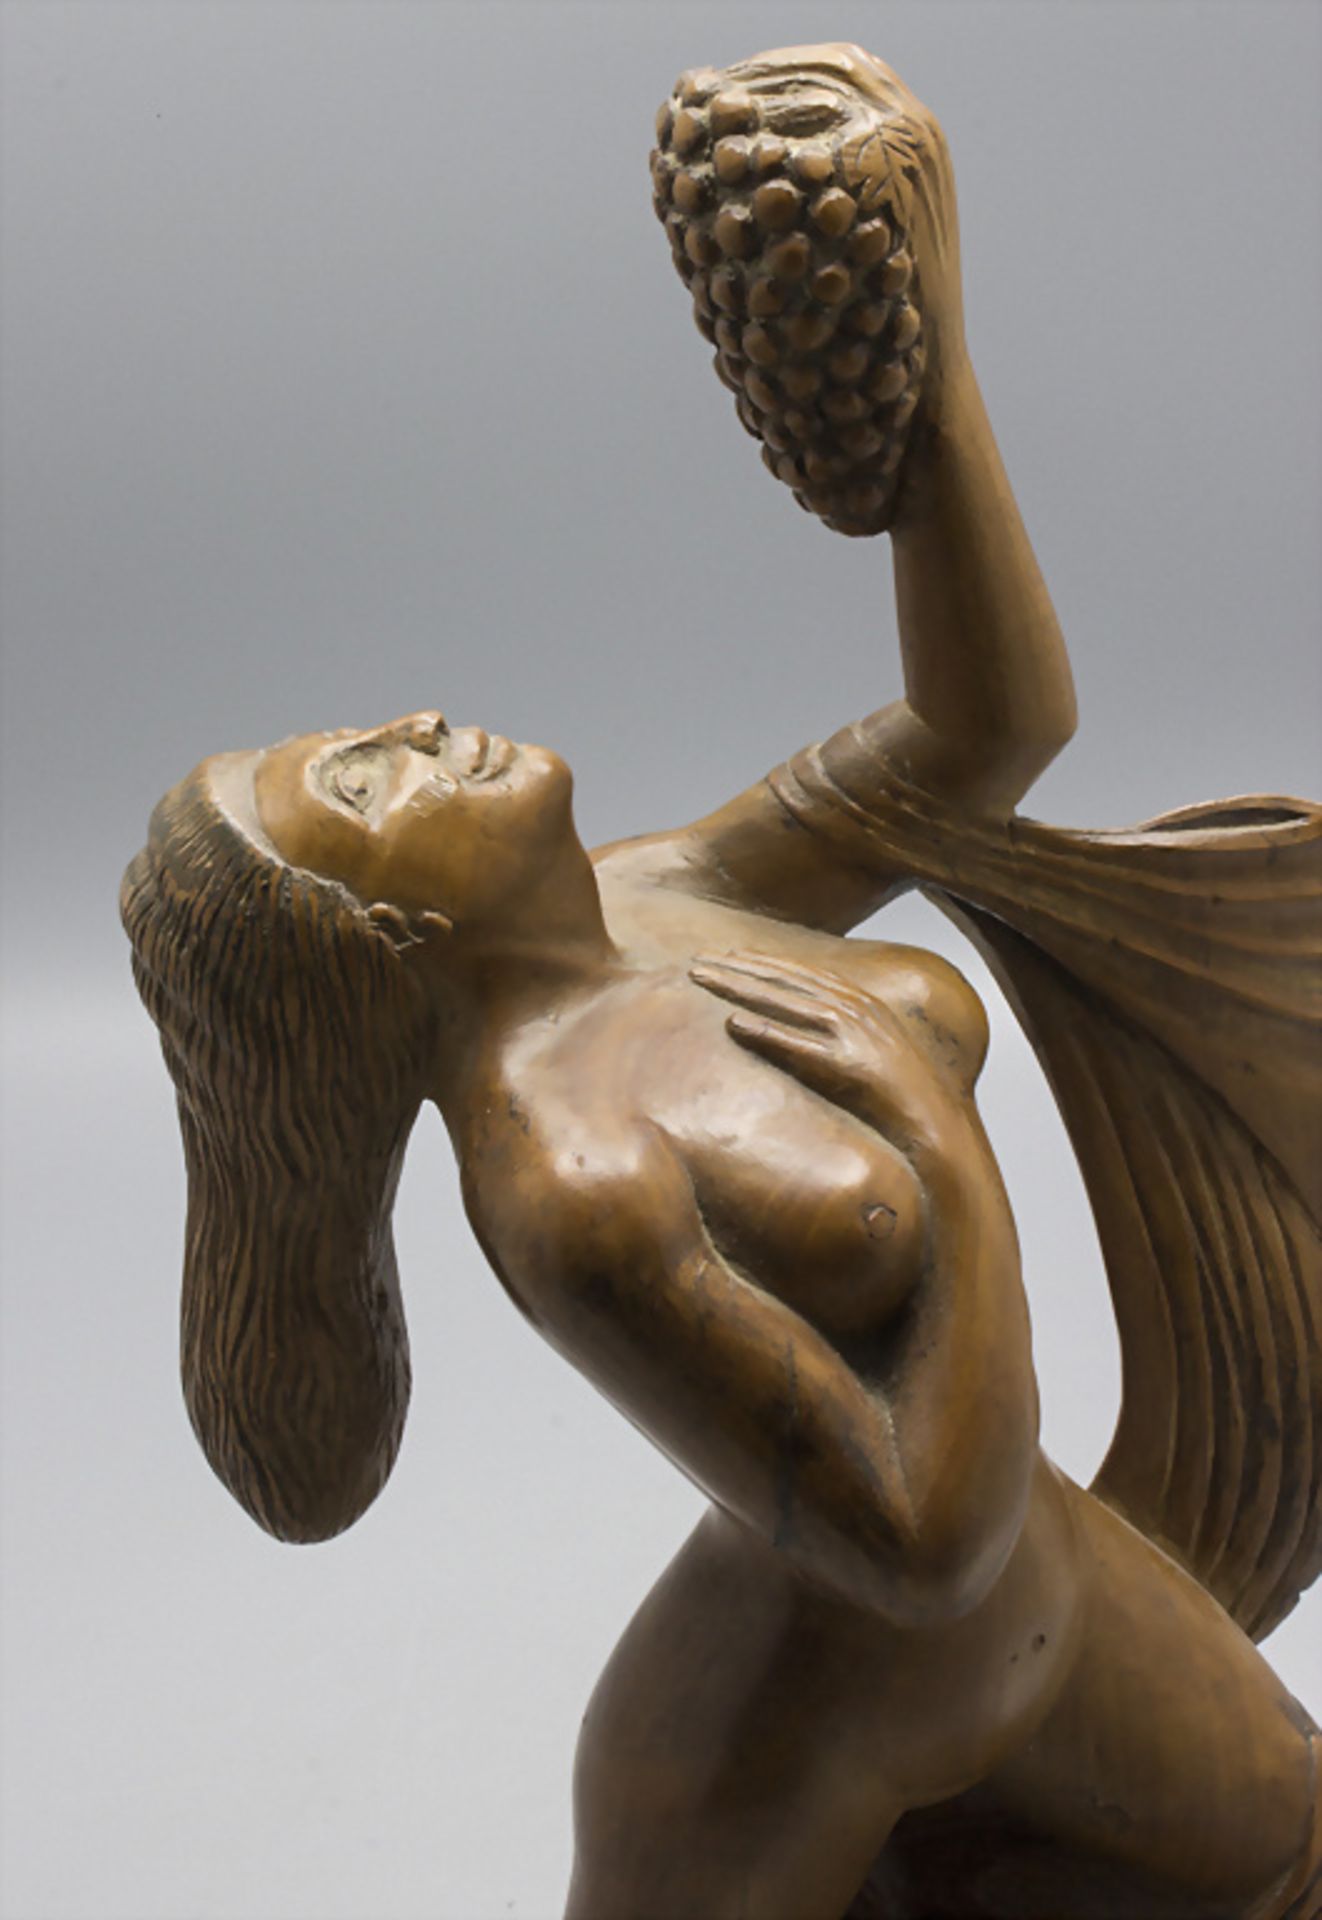 Holzskulptur 'weiblicher Akt mit Trauben' / A wooden scultpture of a female nude with grapes, ... - Bild 4 aus 5